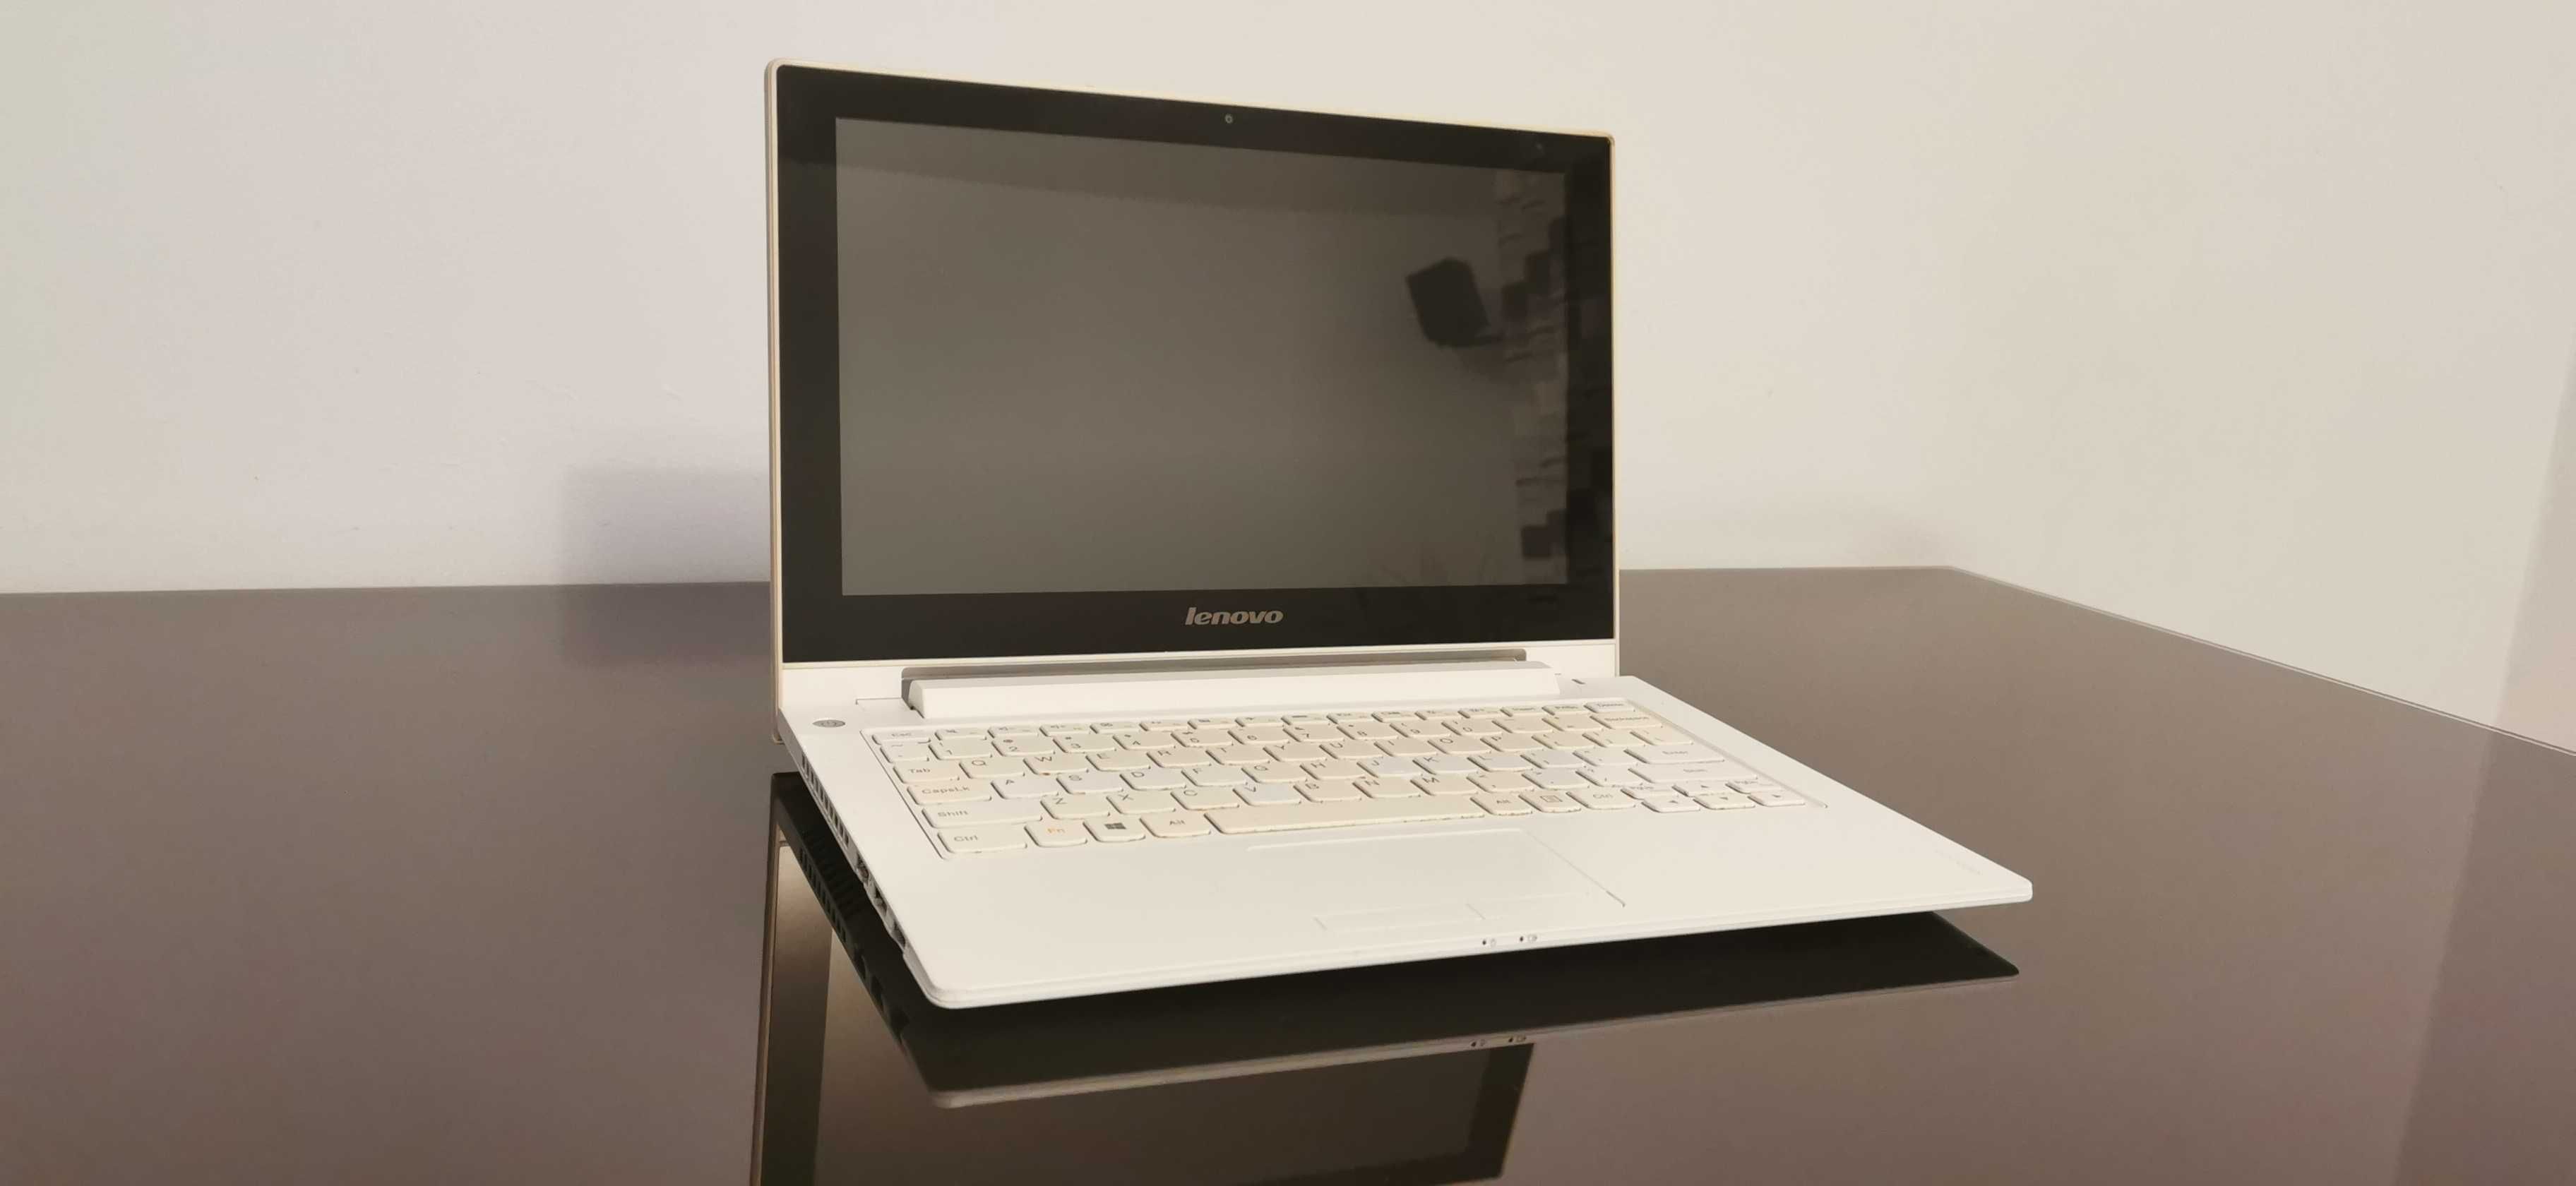 Laptop LENOVO z DOTYKOWĄ matrycą około 13"  512GB SSD   WARSZAWA